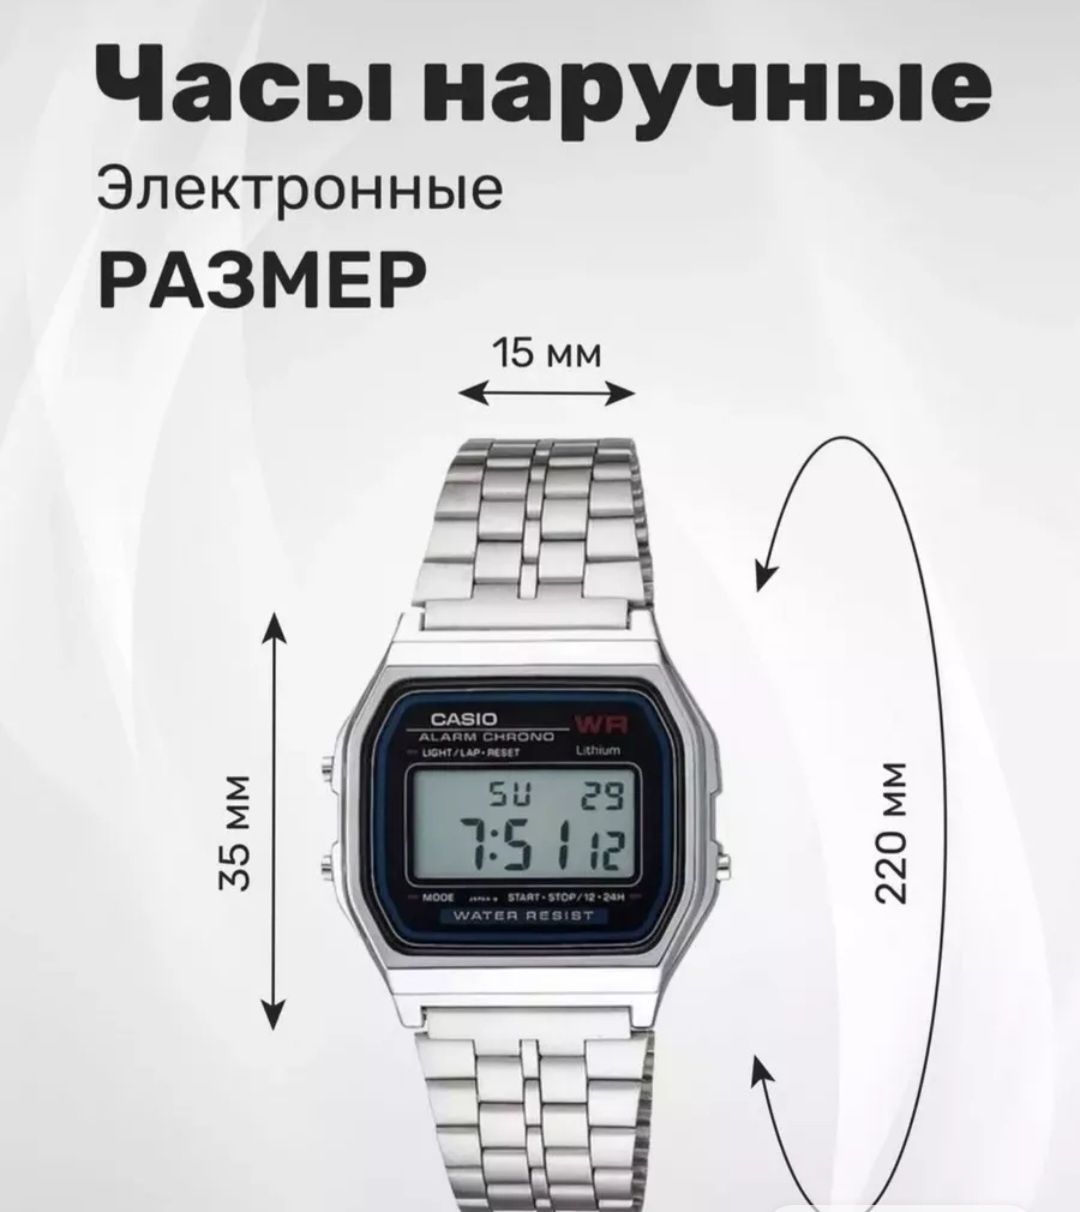 Электронные наручные часы Casio, суперцена.